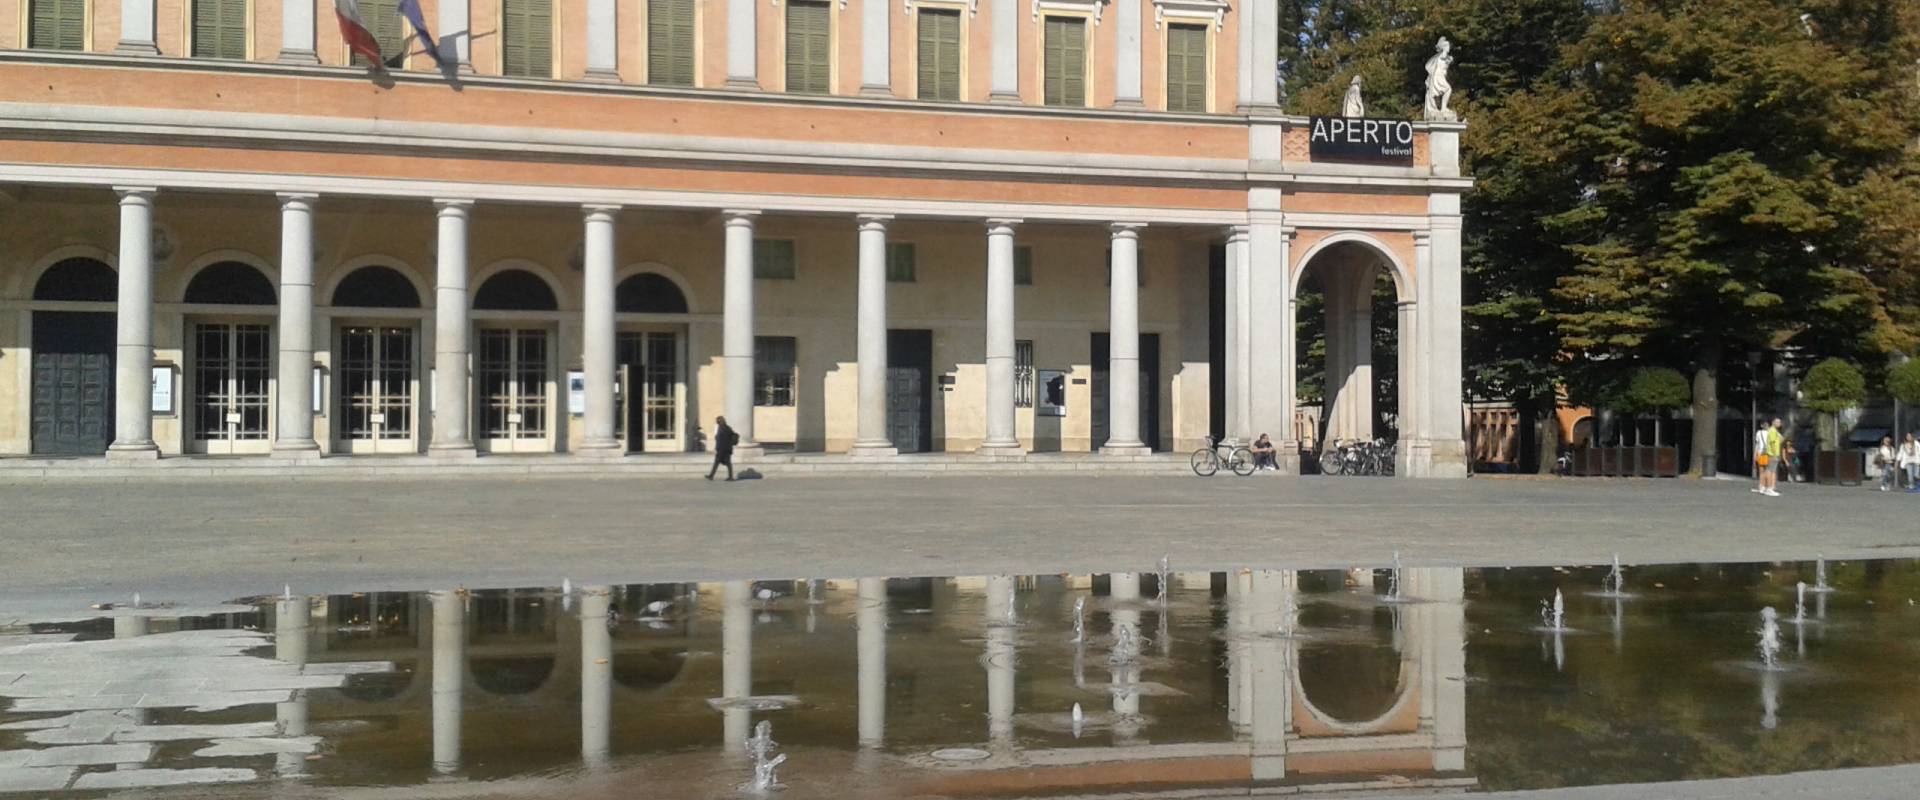 Il teatro e la fontana photo by Rossella-reggio